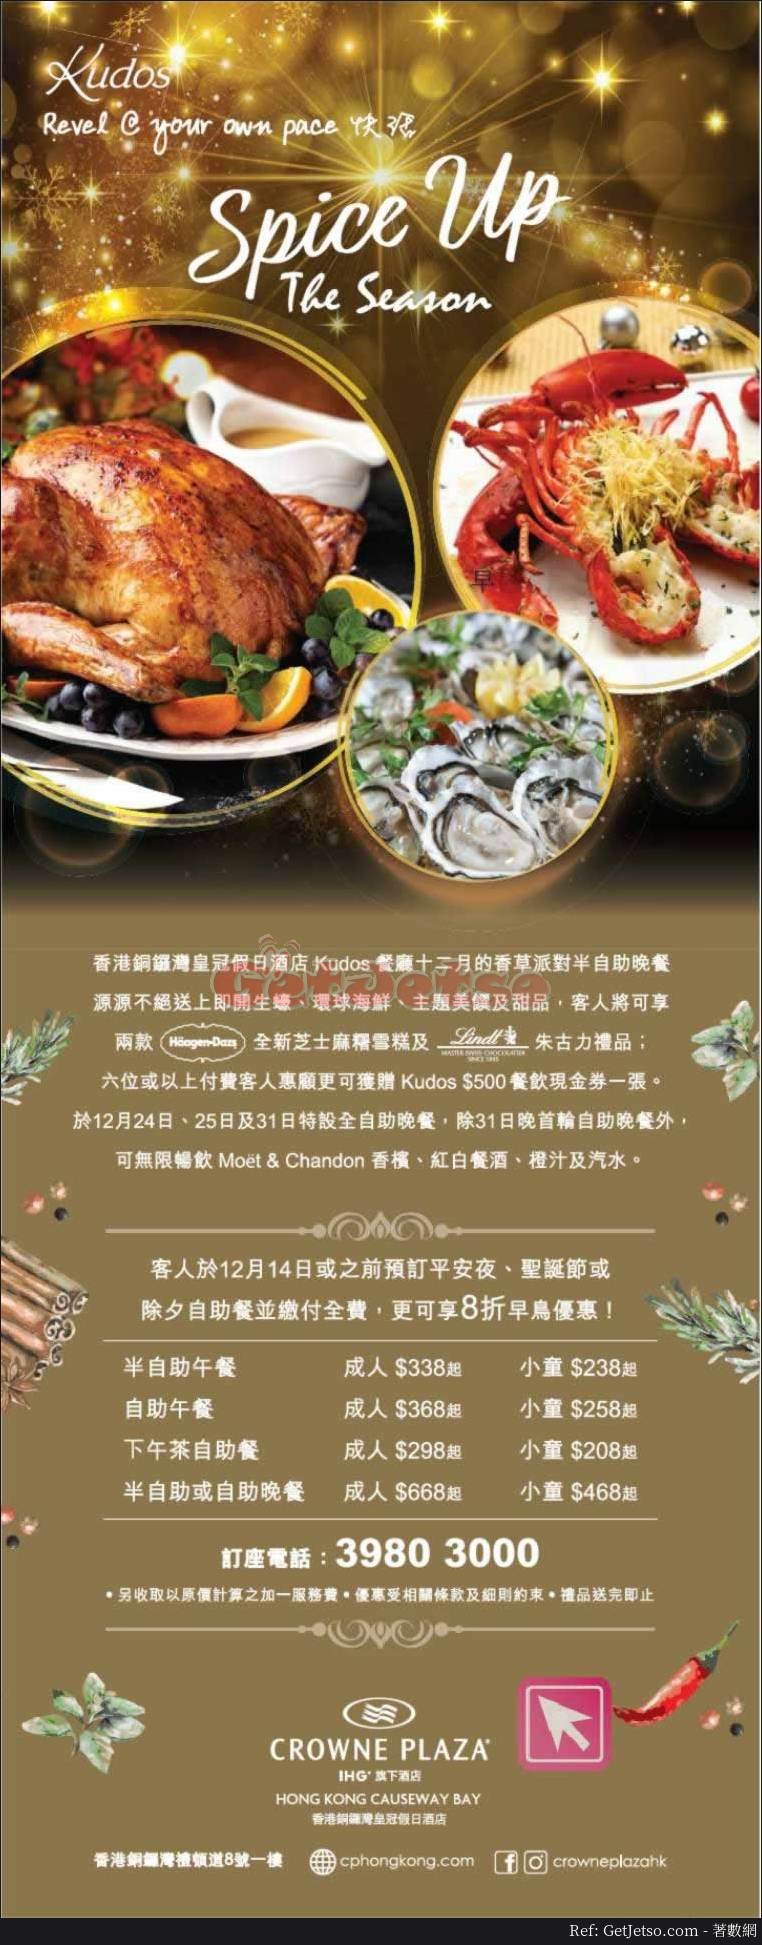 香港銅鑼灣皇冠假日酒店8折聖誕自助餐預訂優惠(至18年12月14日)圖片1